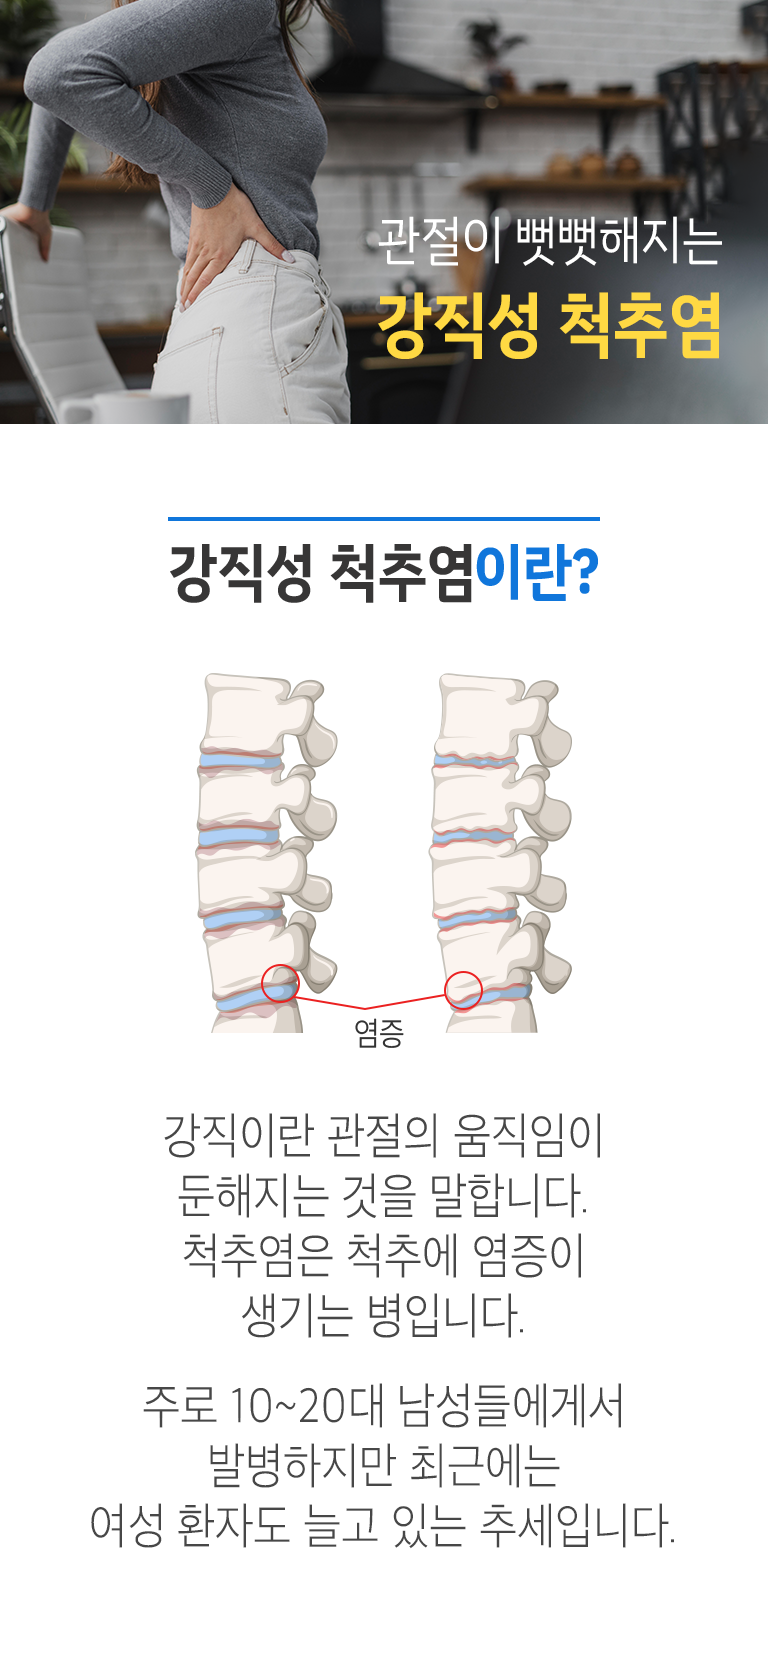 관절이 뻣뻣해지는 강직성 척추염. 강직성 척추염이란? ▷ 강직이란 관절의 움직임이 둔해지는 것을 말합니다. 척추염은 척추에 염증이 생기는 병입니다. 주로 10~20대 남성들에게서 발병하지만 최근에는 여성 환자도 늘고 있는 추세입니다.